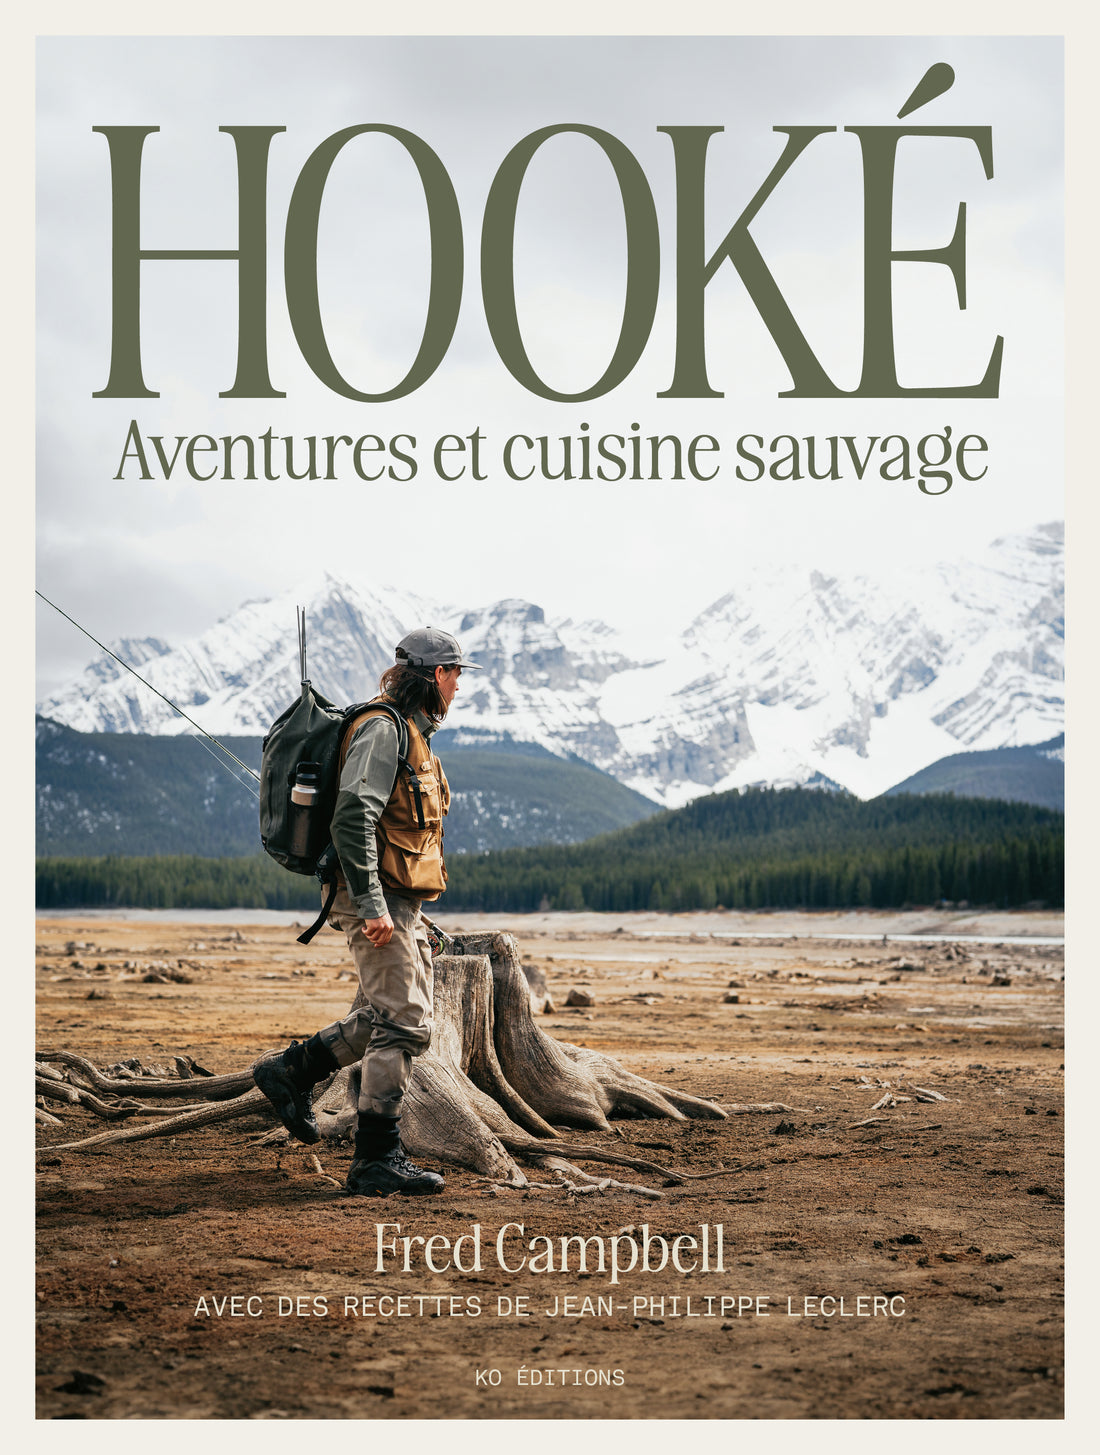 HOOKÉ – Aventures et cuisine sauvage